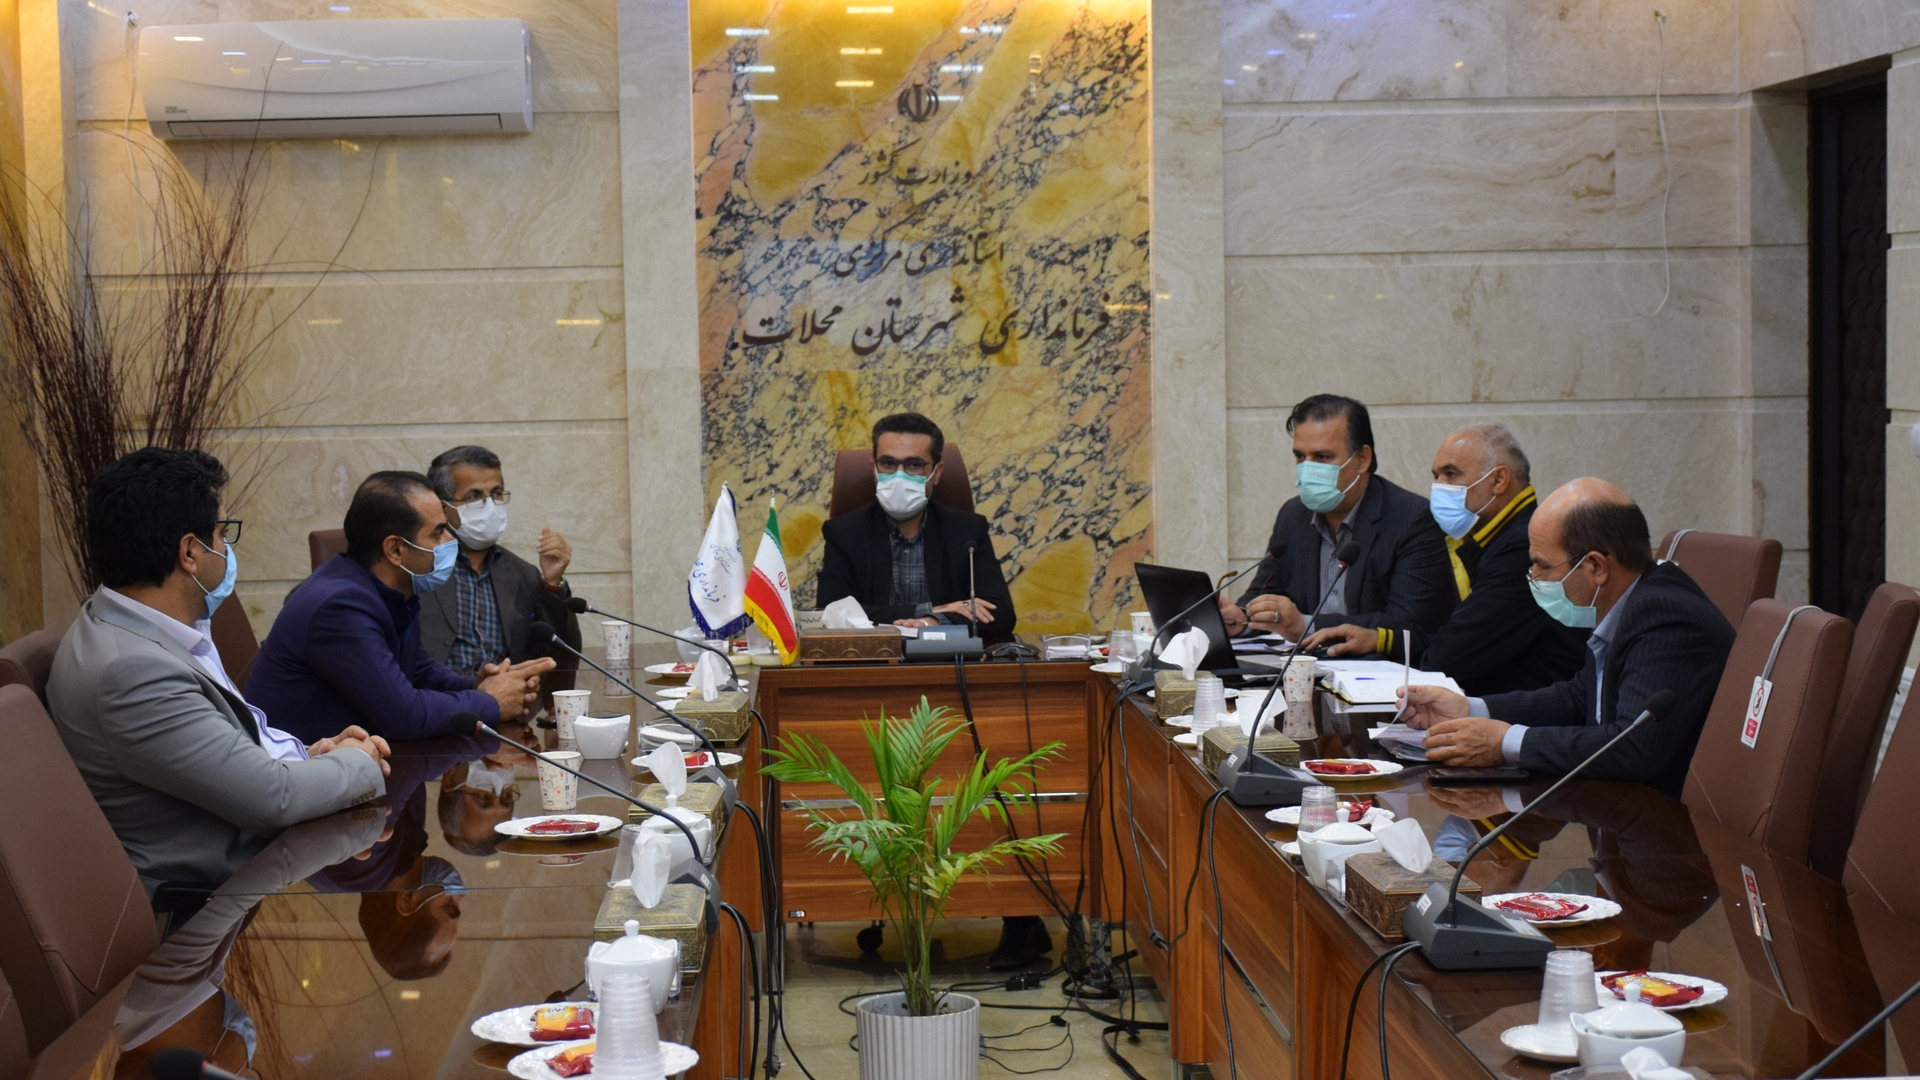 کمیته تطبیق مصوبات شوراهای اسلامی شهرهای محلات و نیم ور